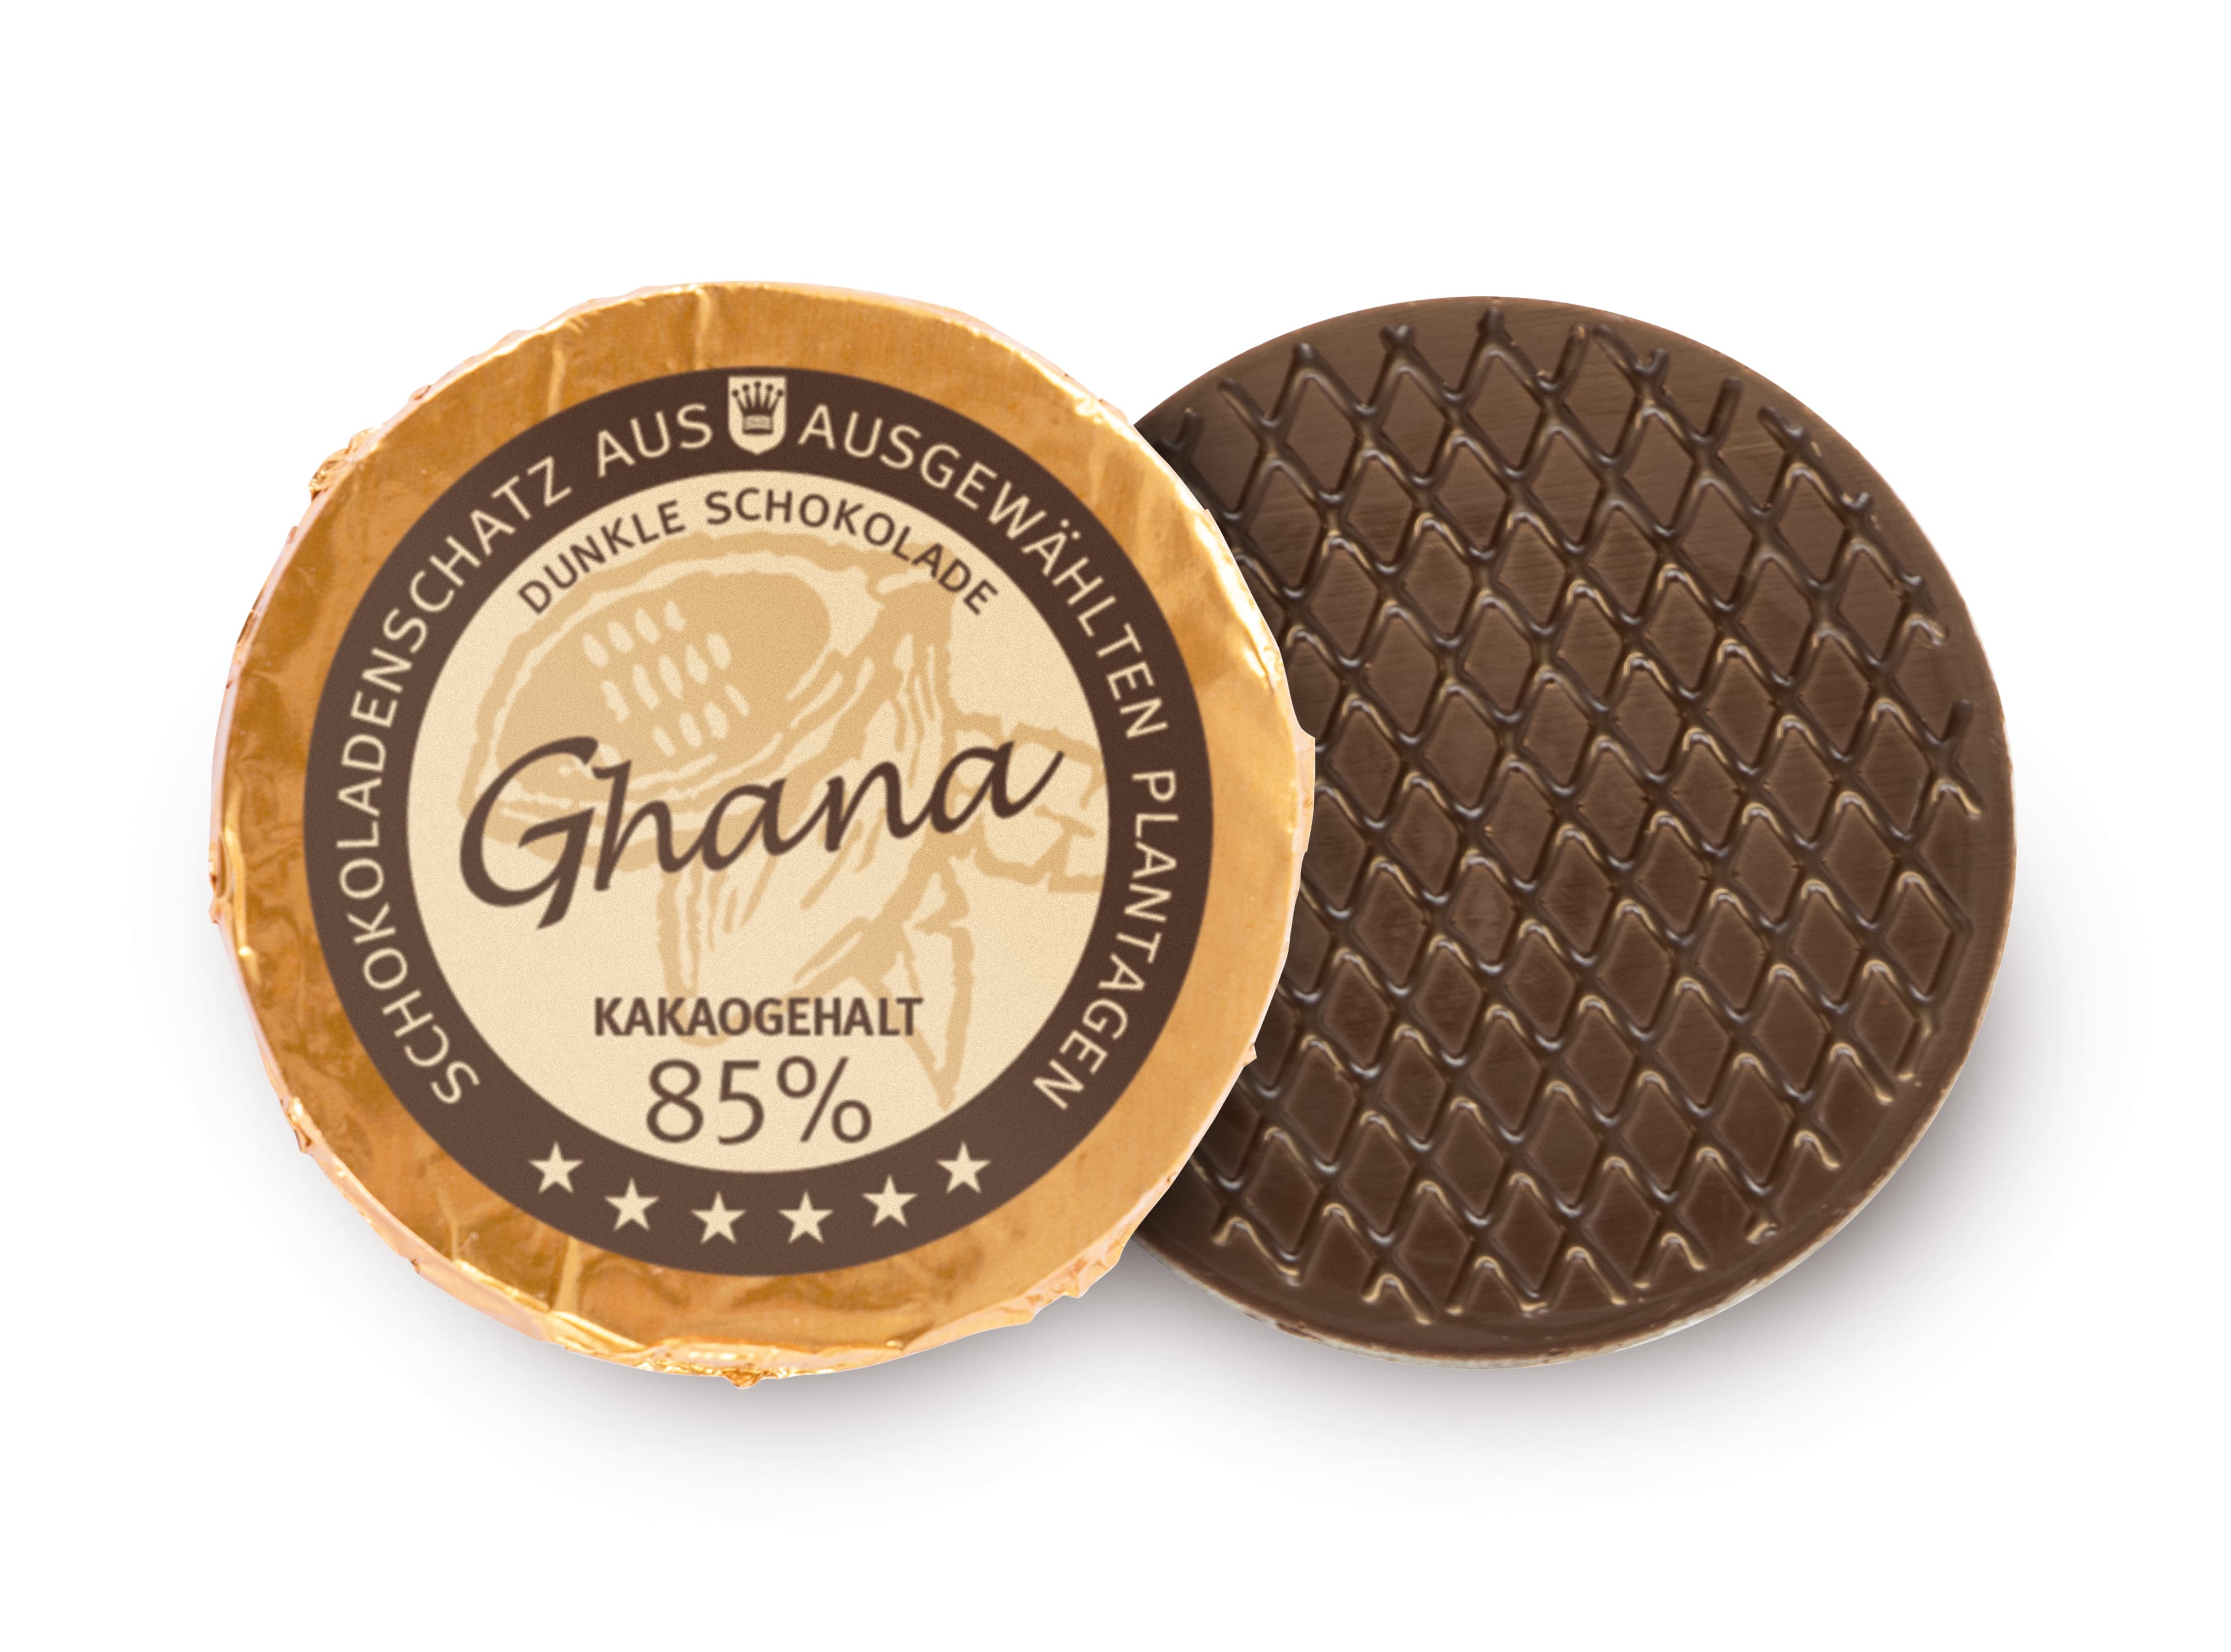 Golddublone aus Ghana-Schokolade mit 85 % Kakaogehalt